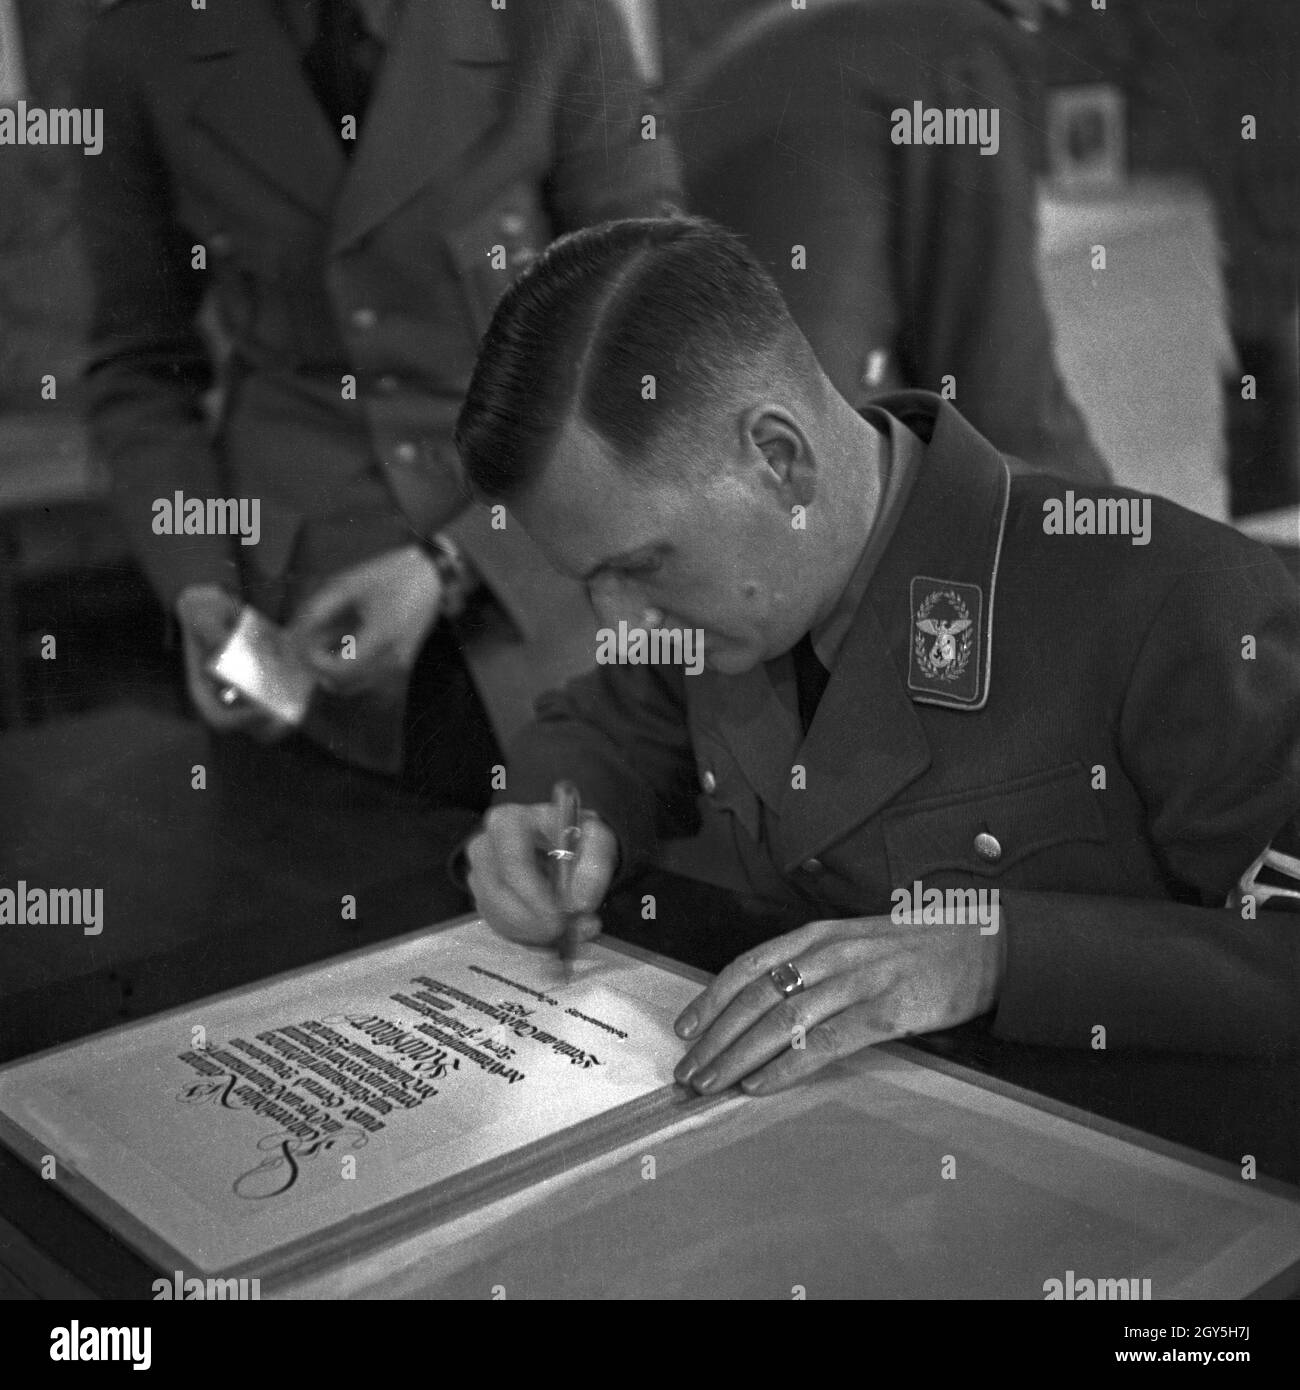 Reichsleistet eine Unterschrift, Deutschland 1930er Jahre.Reichsleiter signant un document, Allemagne des années 1930. Banque D'Images